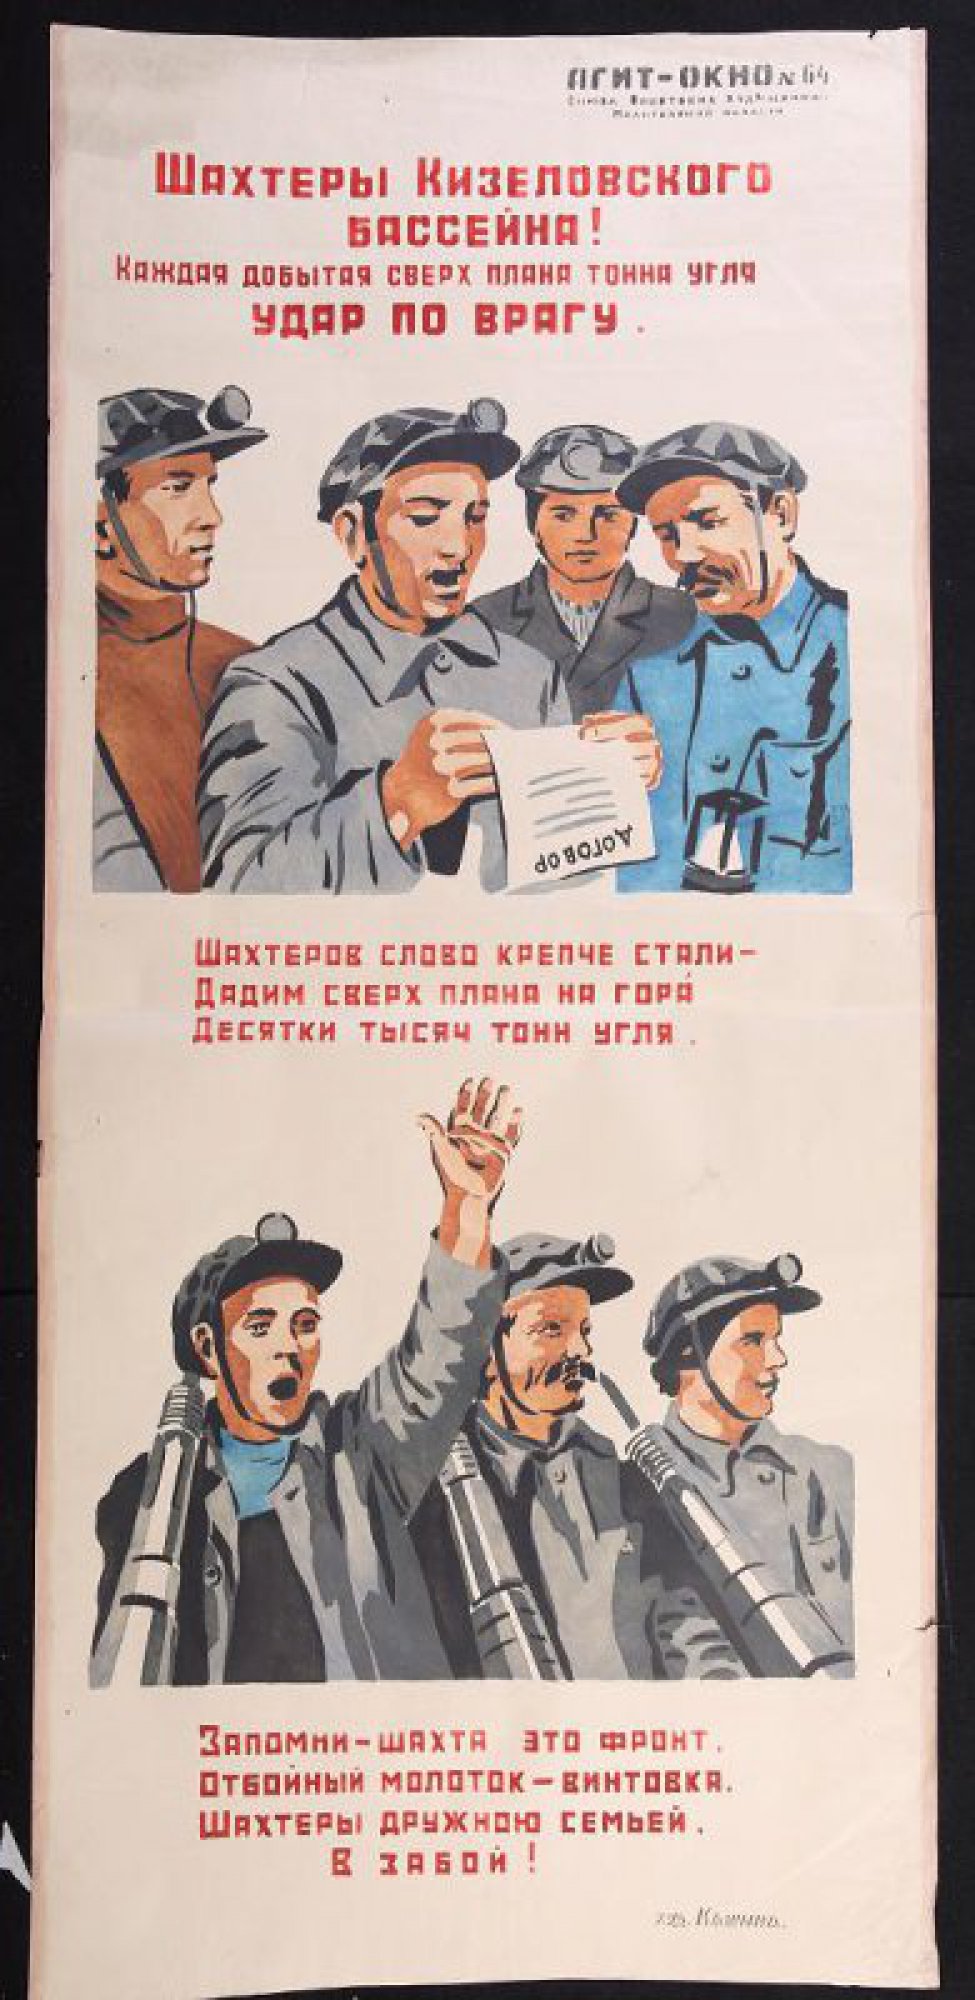 Помещено 2 рисунка: 1) группа шахтеров читающих договор; 2) трое шахтеров с отбойными молотками, текст: "Запомни - шахта это фронт,..."